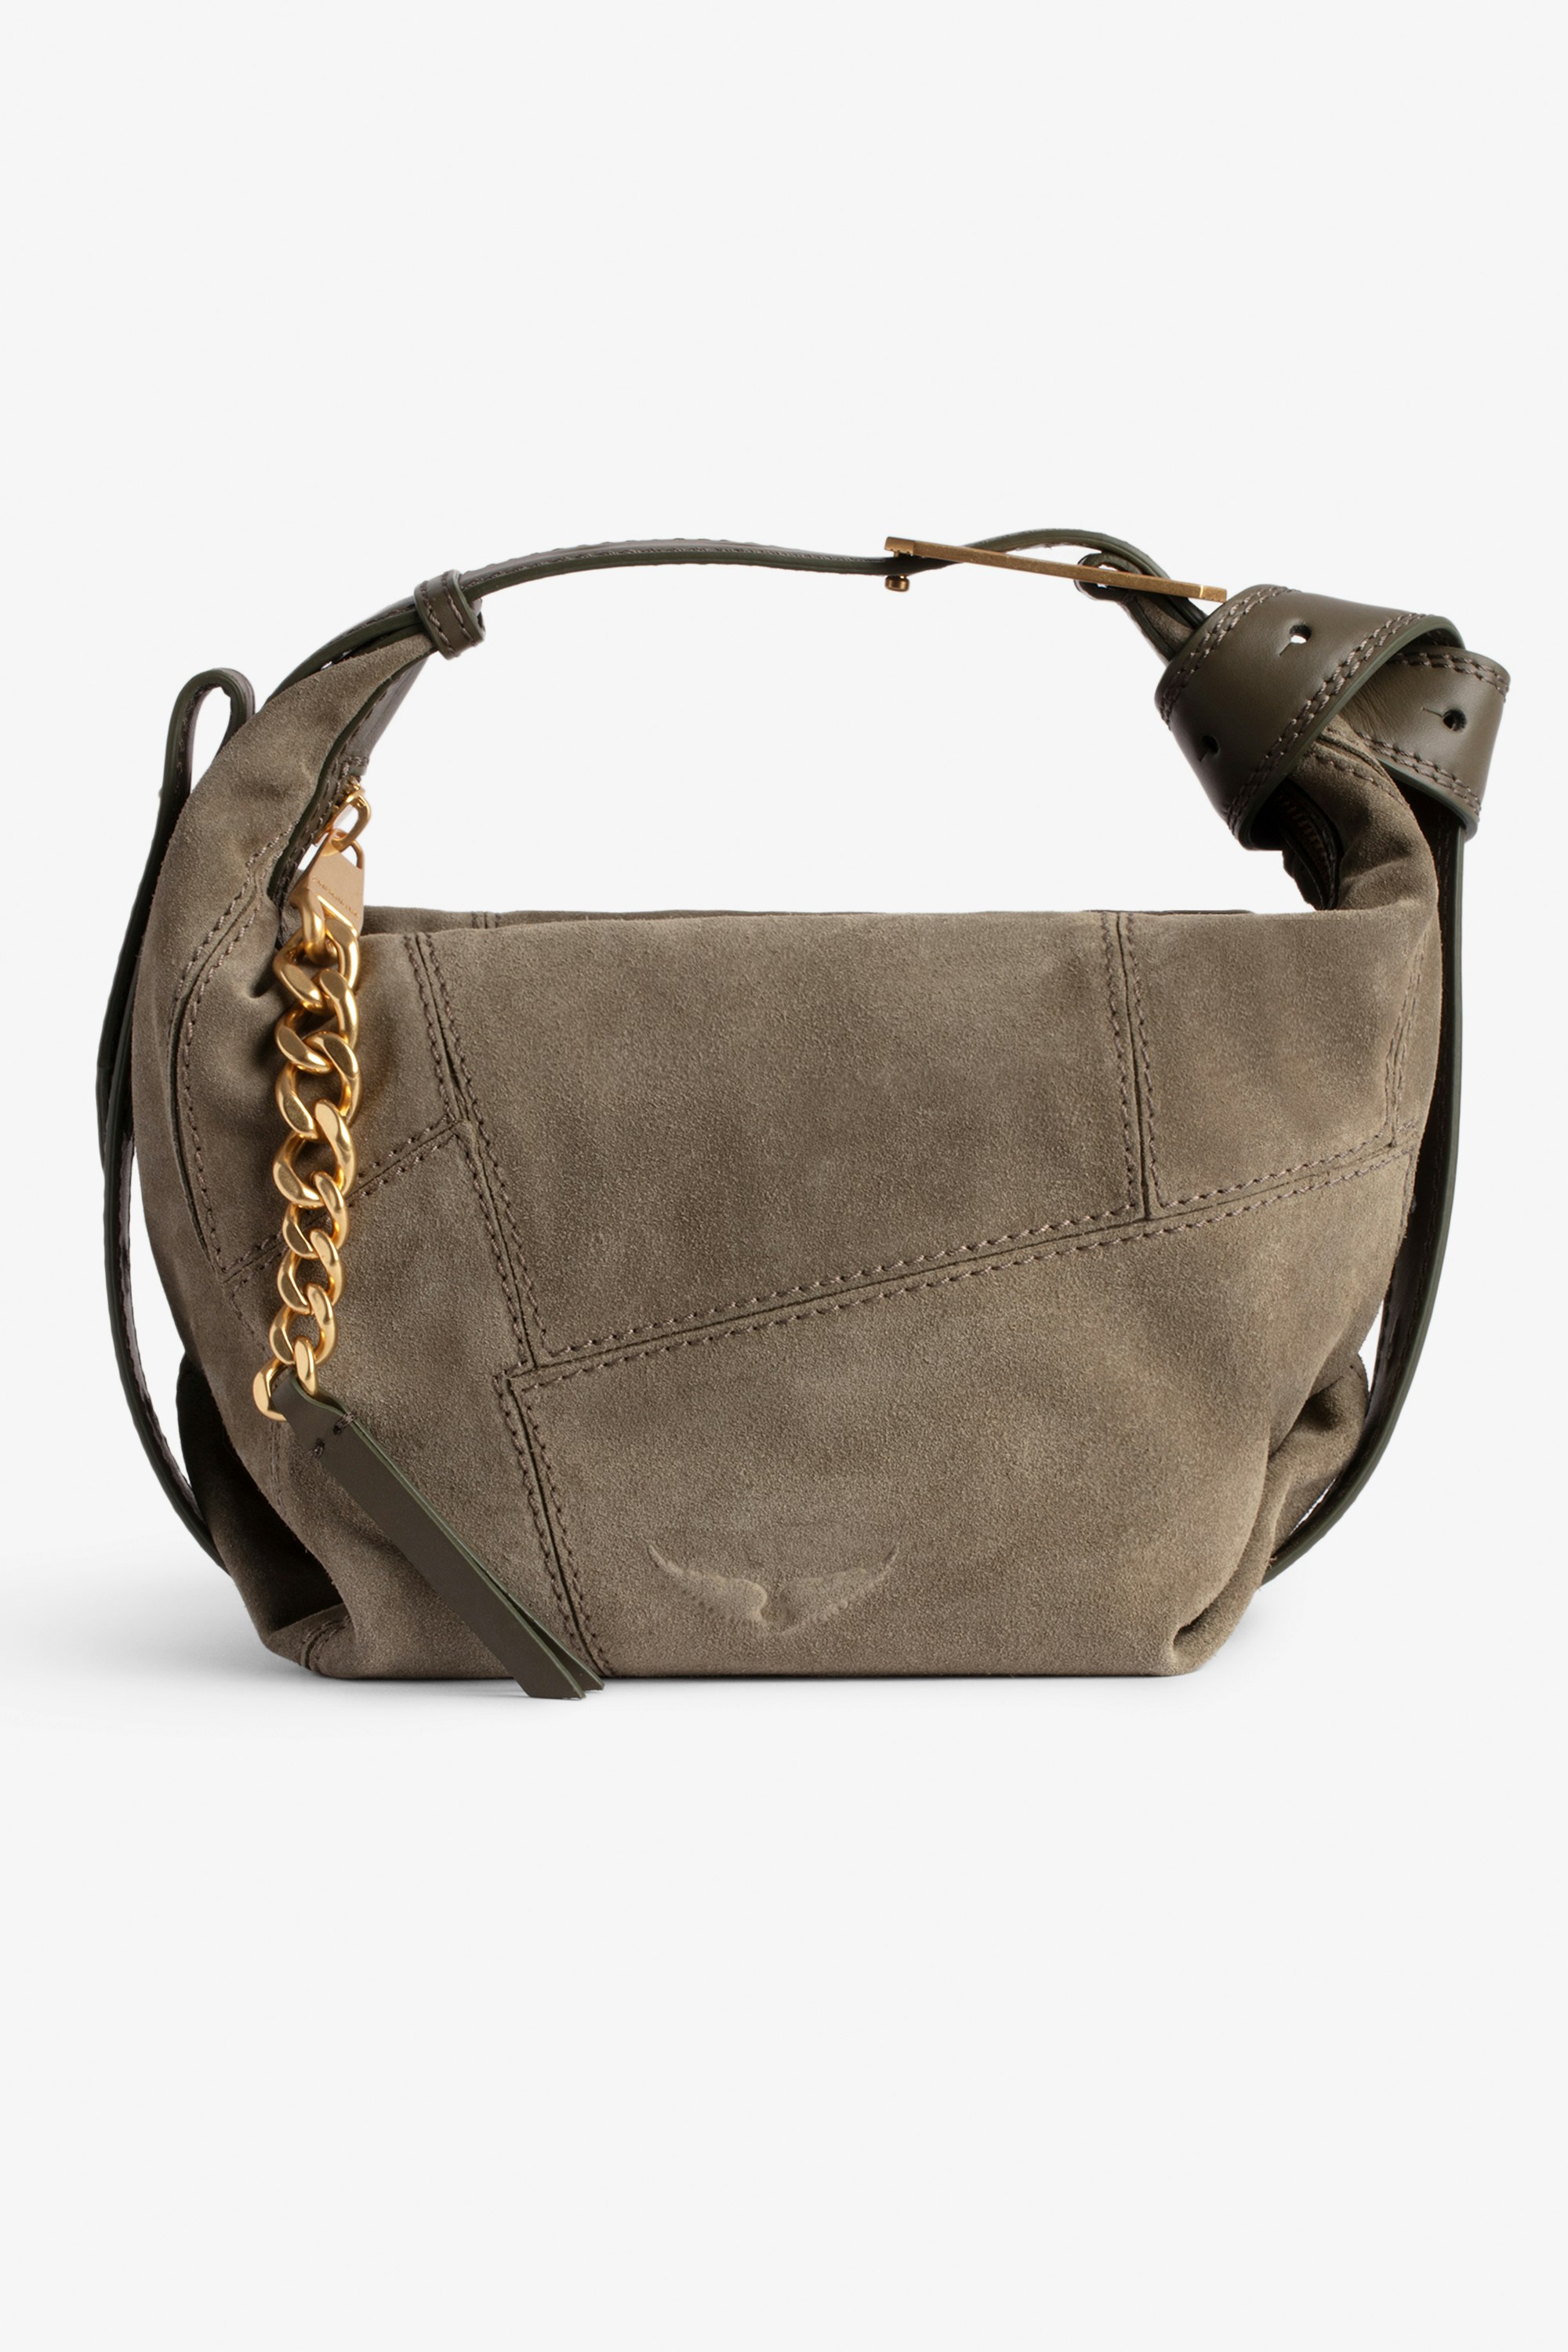 Le Cecilia Suede Patchwork Bag Women's khaki suede patchwork bag with handle